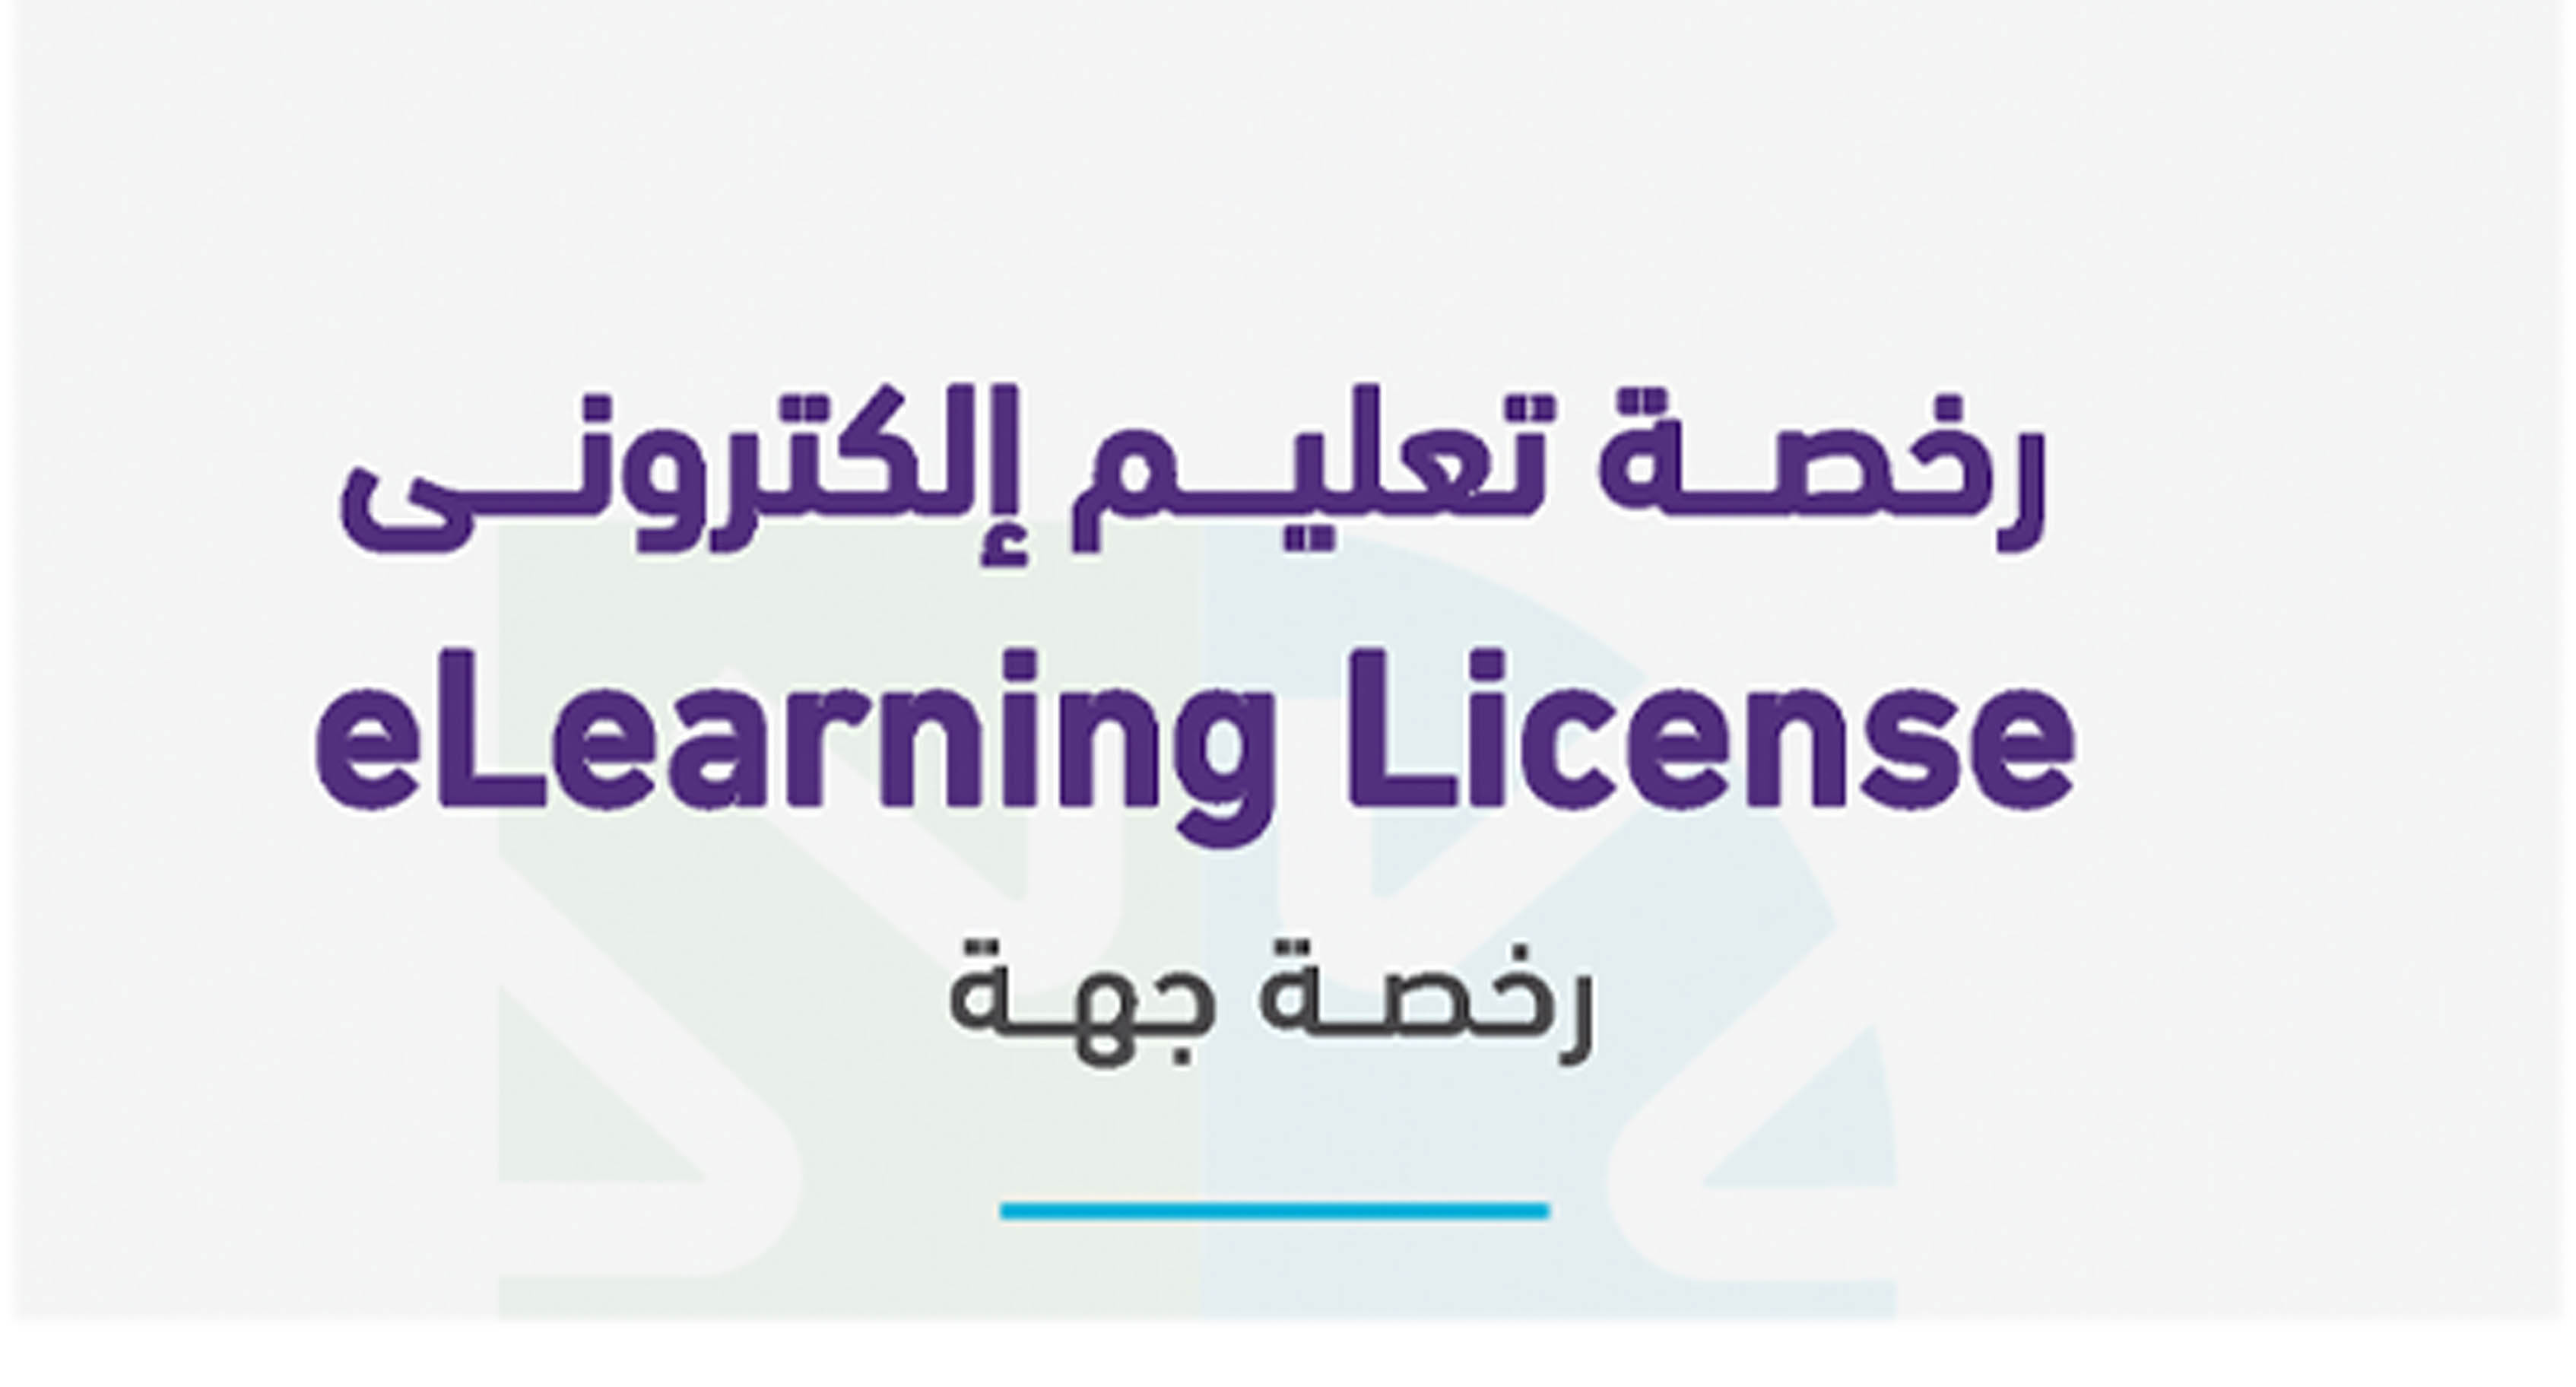 معهد جمعية النحالين التعاونية الدولي للتدريب بالباحة يحصل على رخصة التعليم الالكتروني